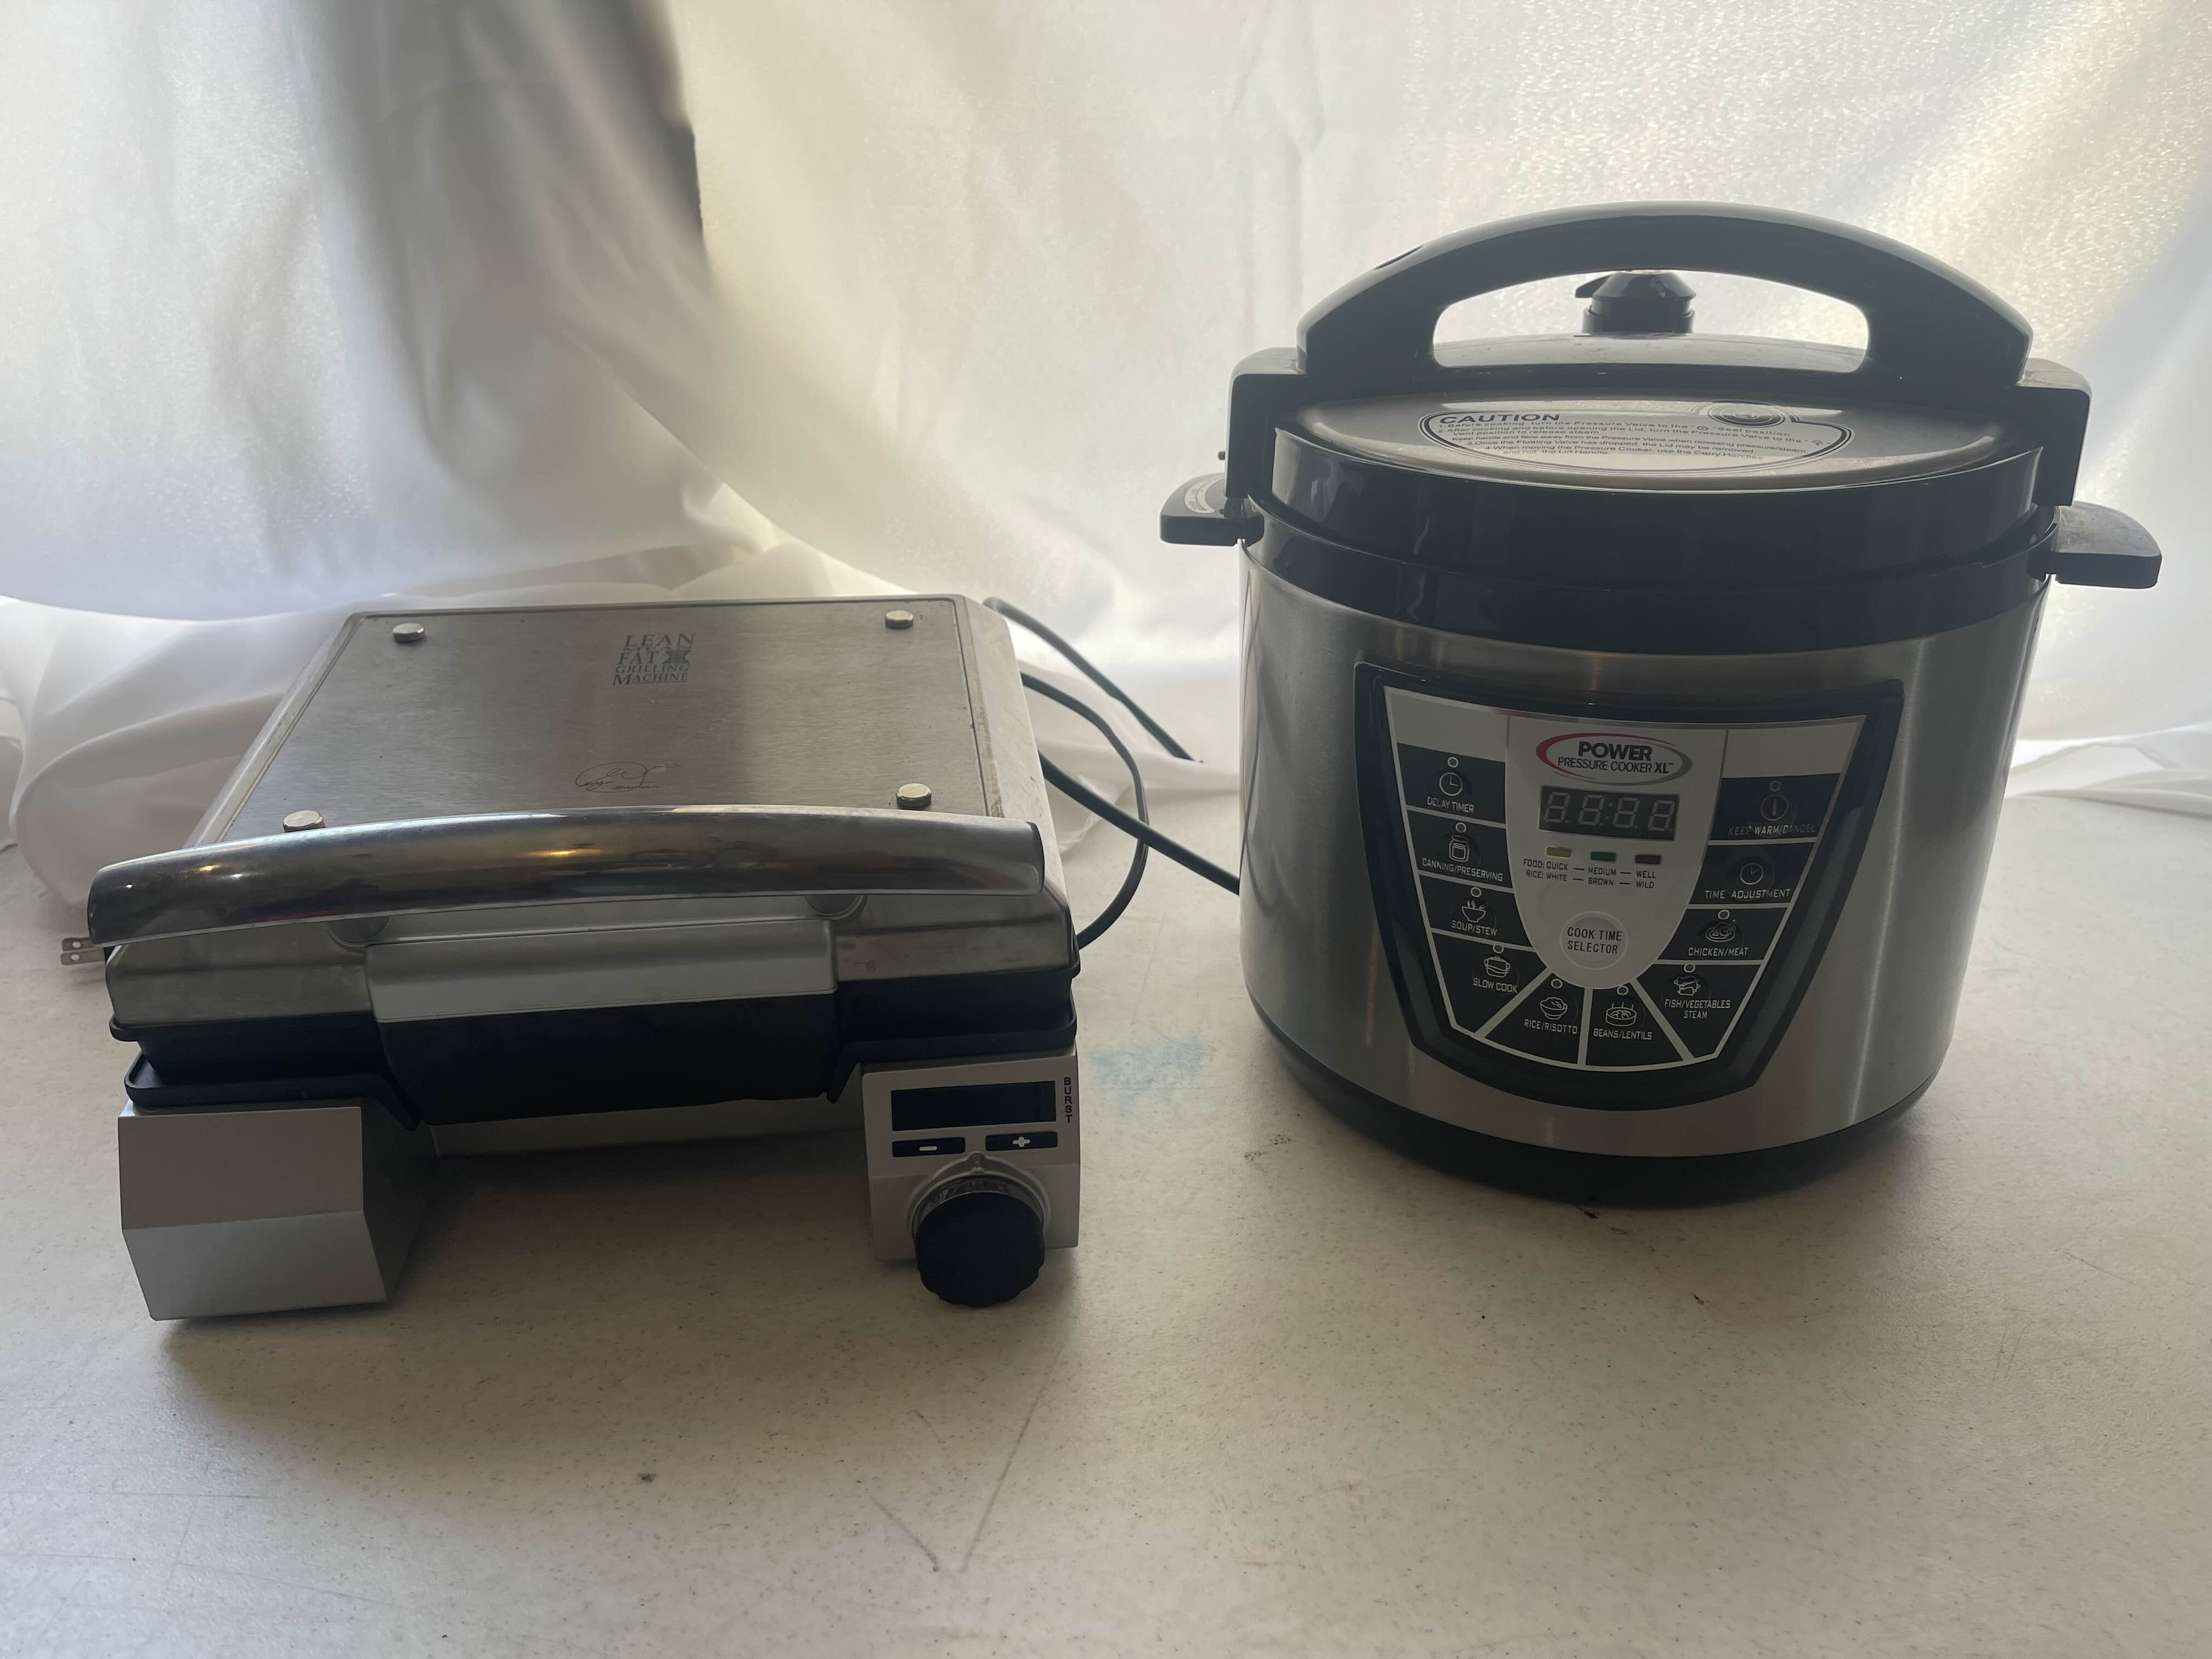 Power preasure cooker XL Pro 6 qt. - appliances - by owner - sale